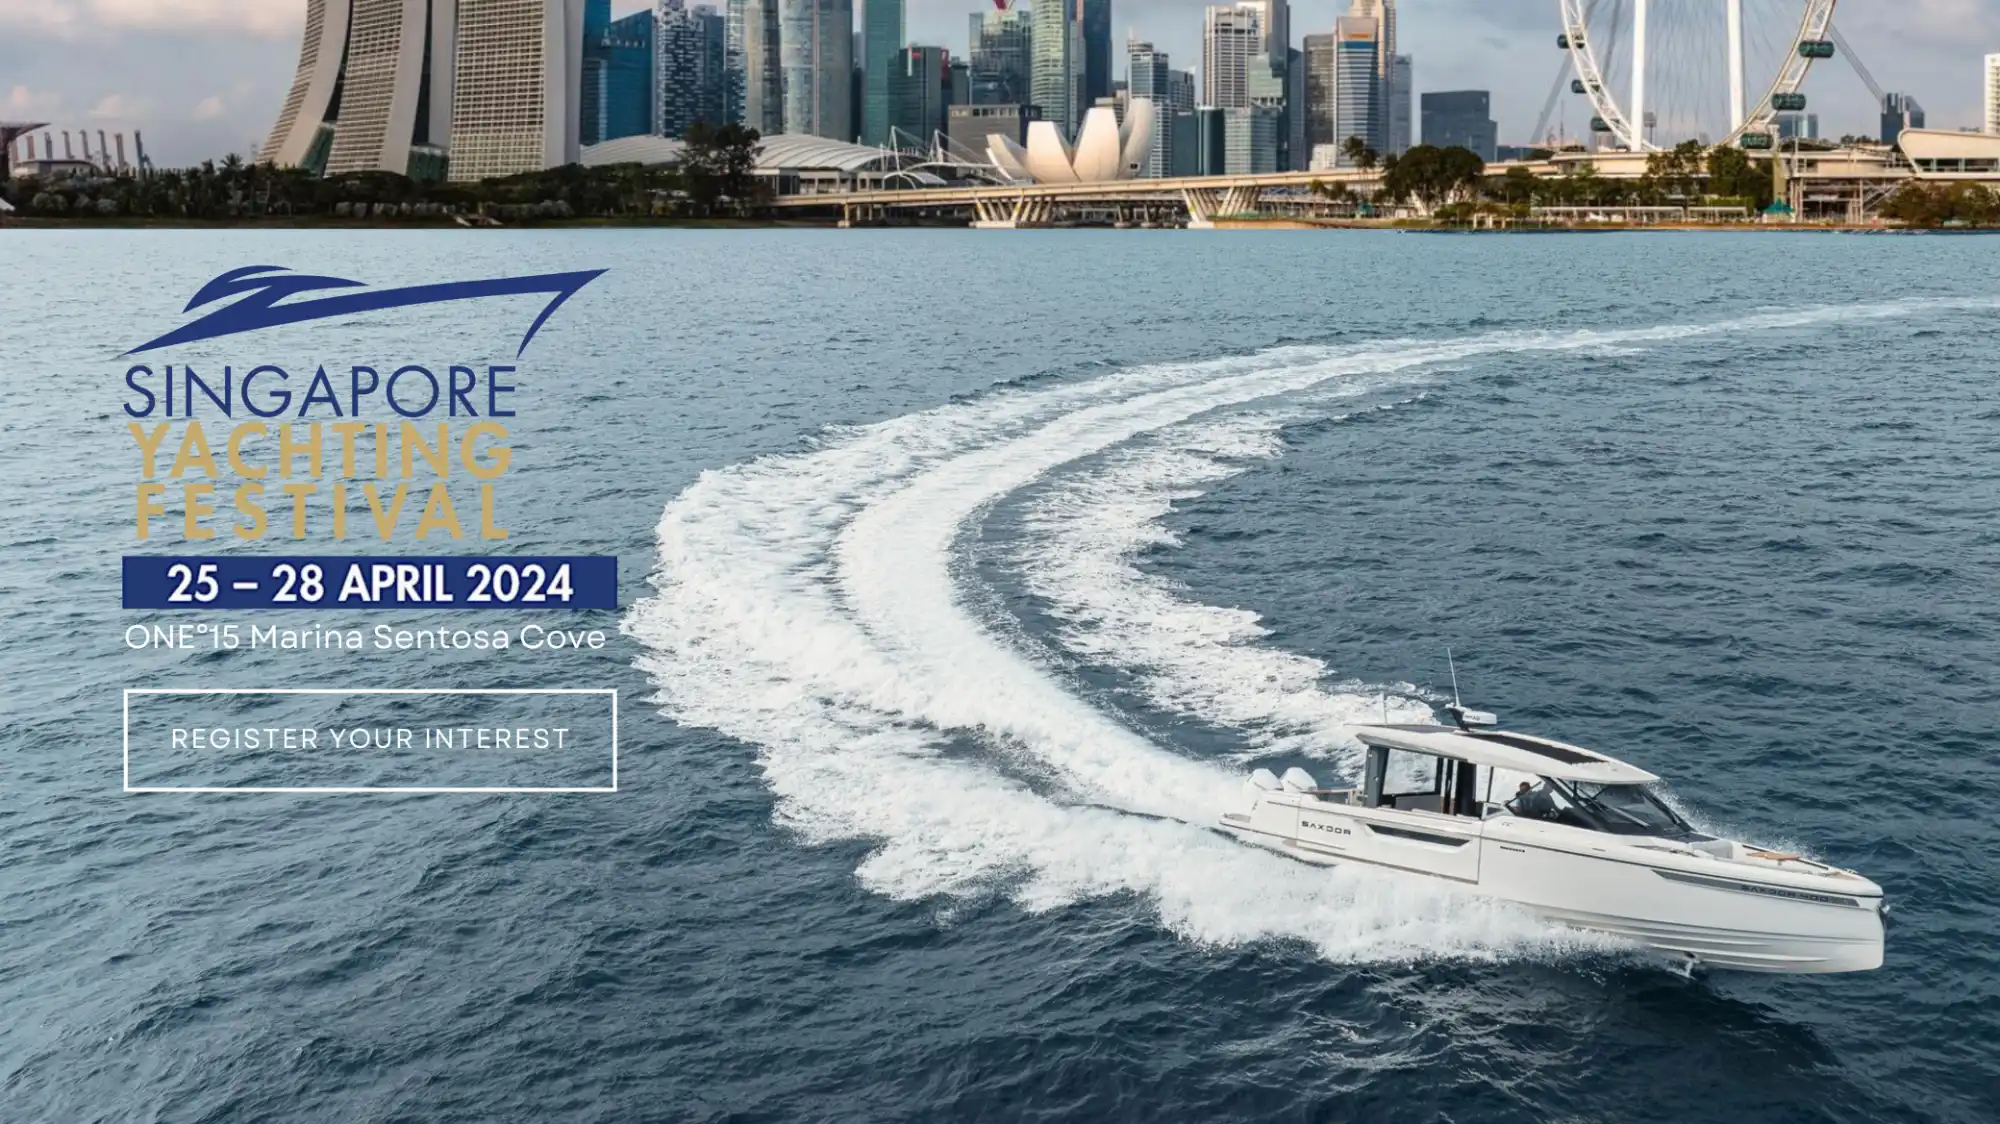 Singapore Yachting Festival 2024 - Saxdor Yachts Singapore